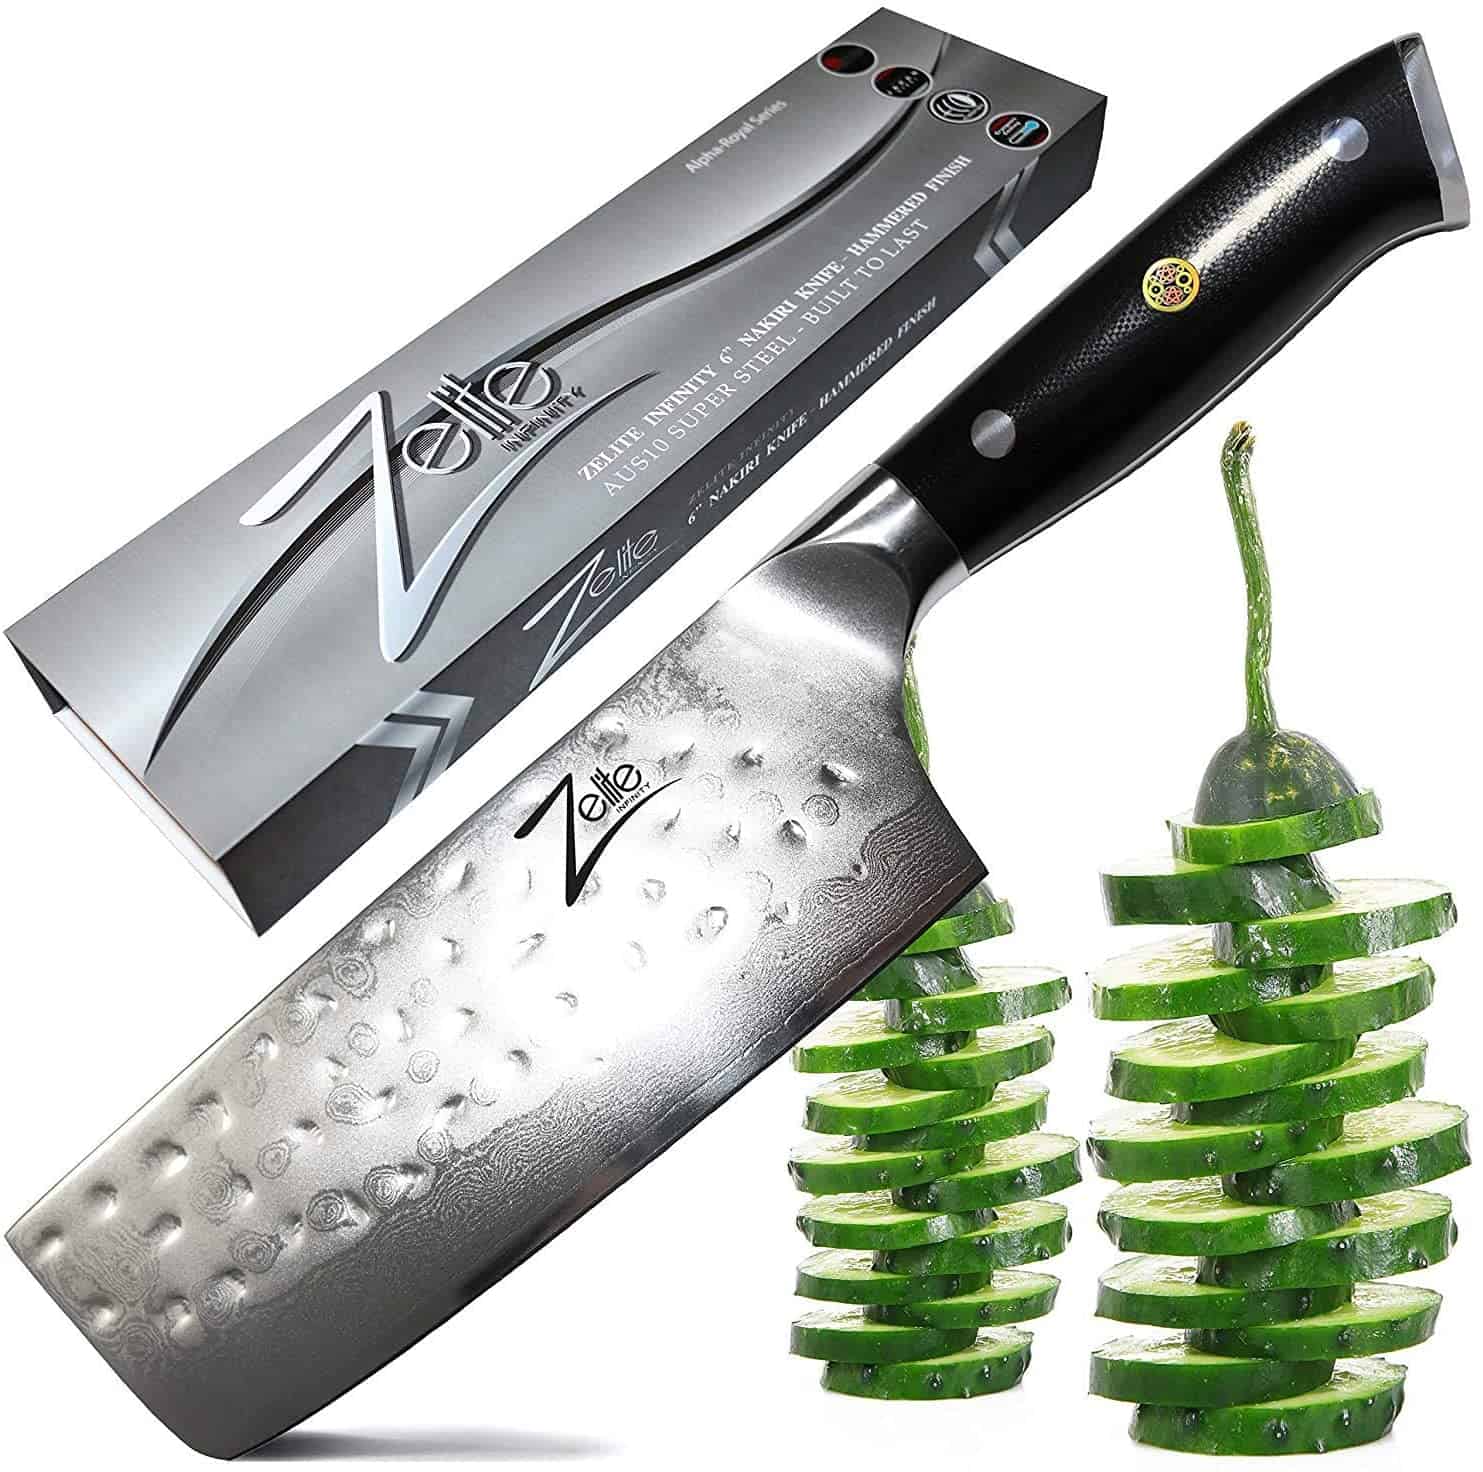 Լավագույն AUS 10 ճապոնական պողպատե դանակ բանջարեղենի համար - Zelite Infinity Nakiri Chef Knife 6 դյույմ